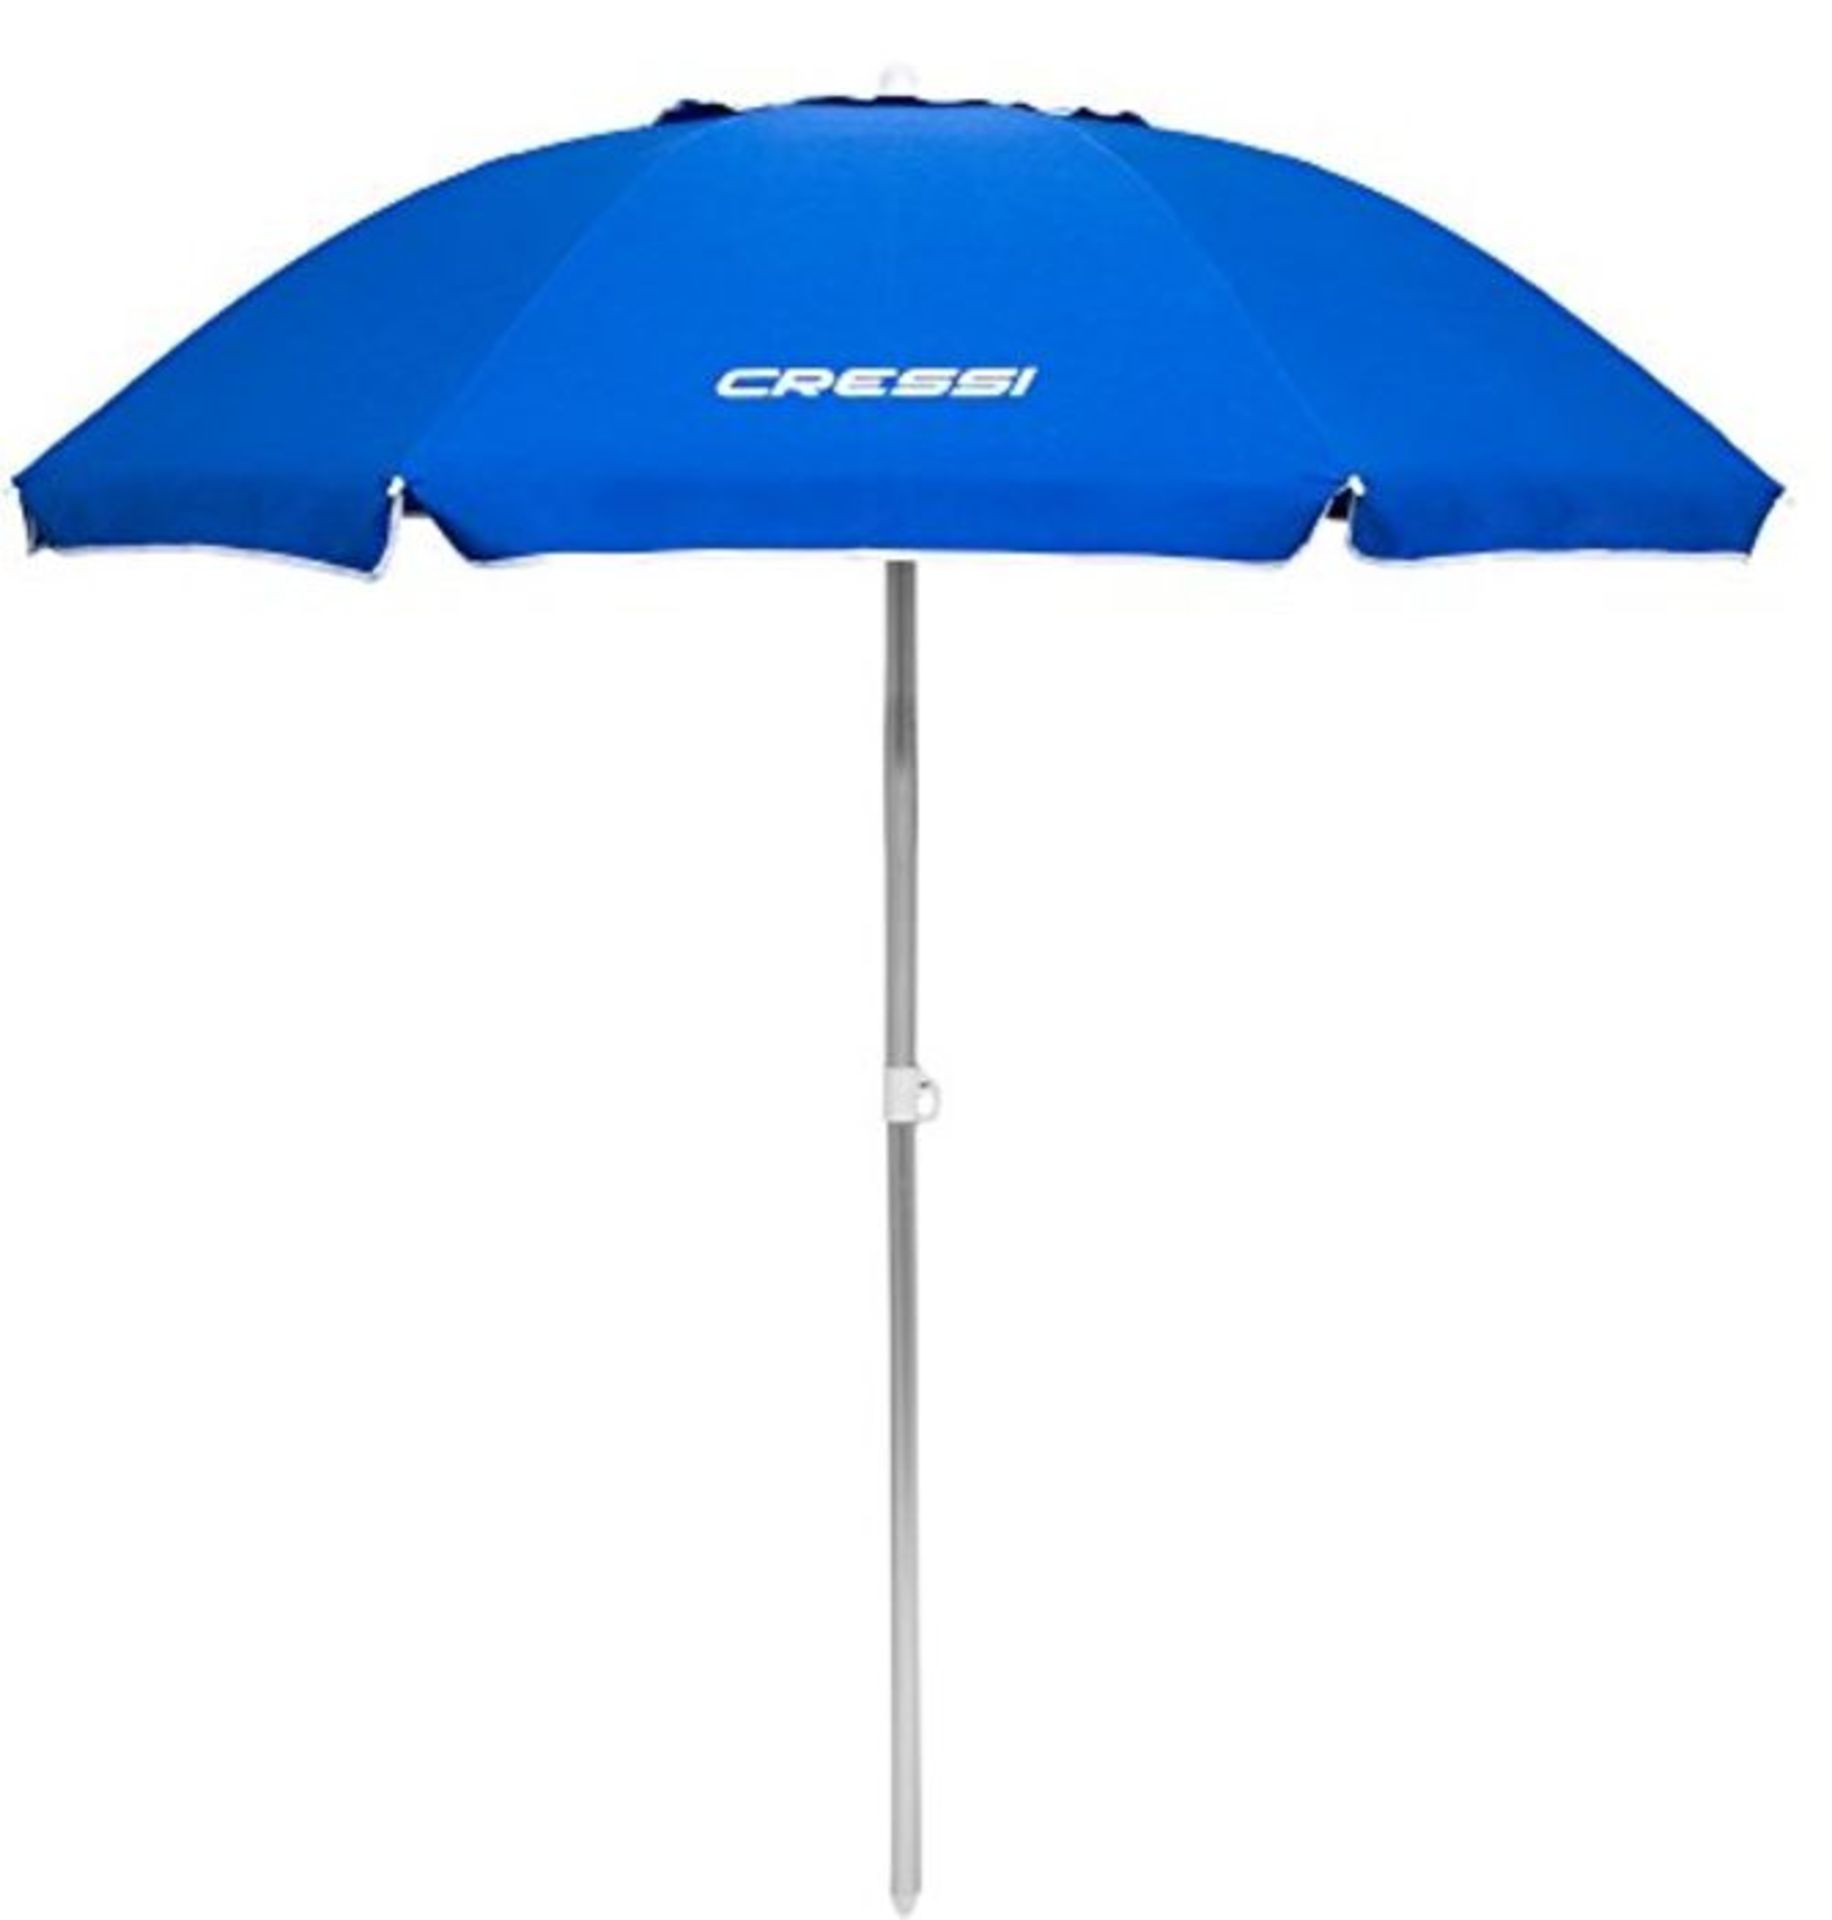 Cressi Unisex's Alluminium Beach Umbrella Zinc Alloy Tilt & Air Vent Premium Portable,